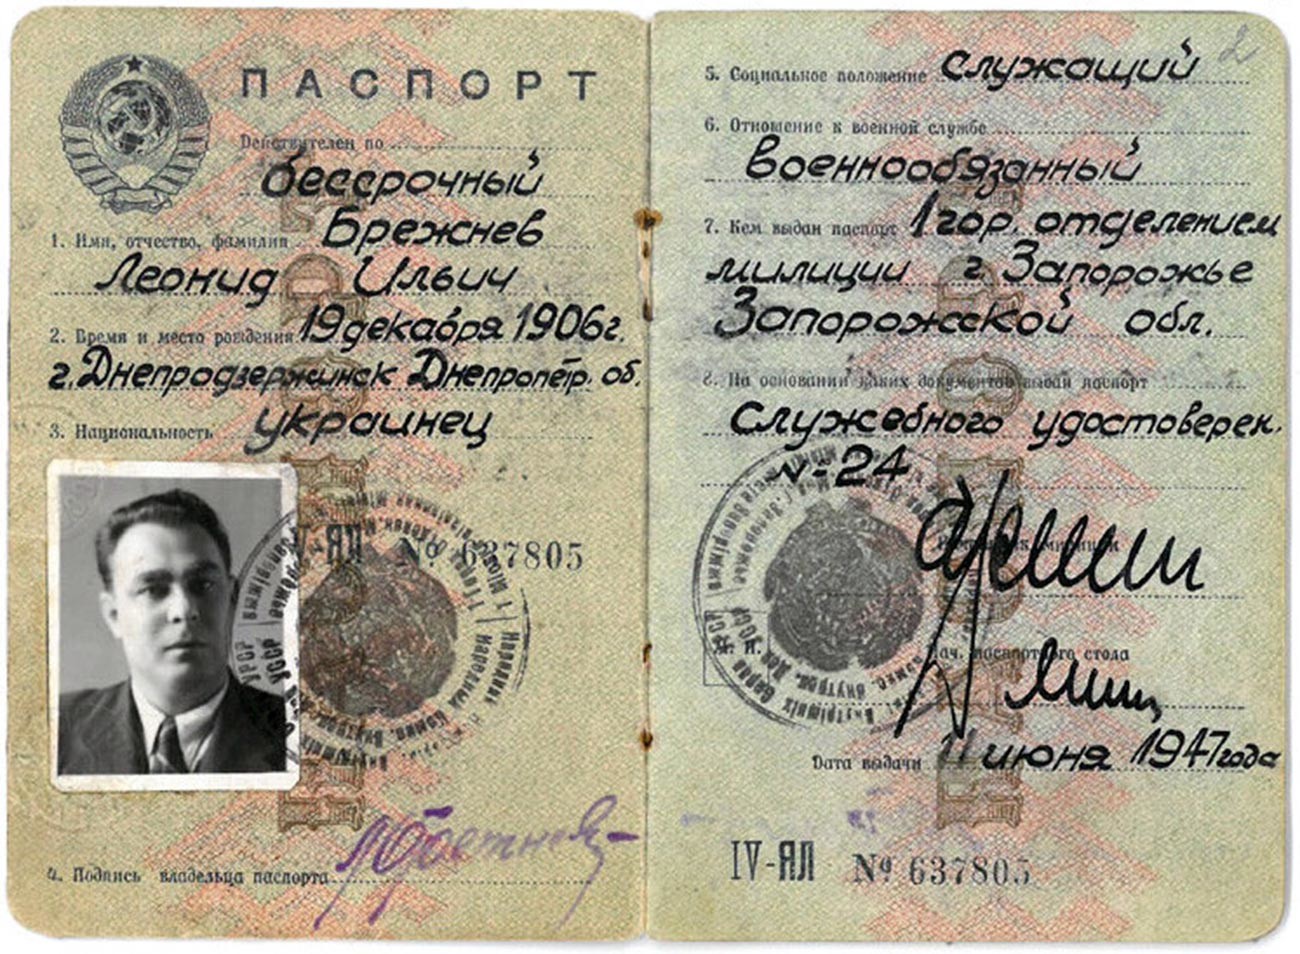 Il passaporto di Leonid Brezhnev, Segretario Generale del Comitato Esecutivo del Partito Comunista dell'URSS